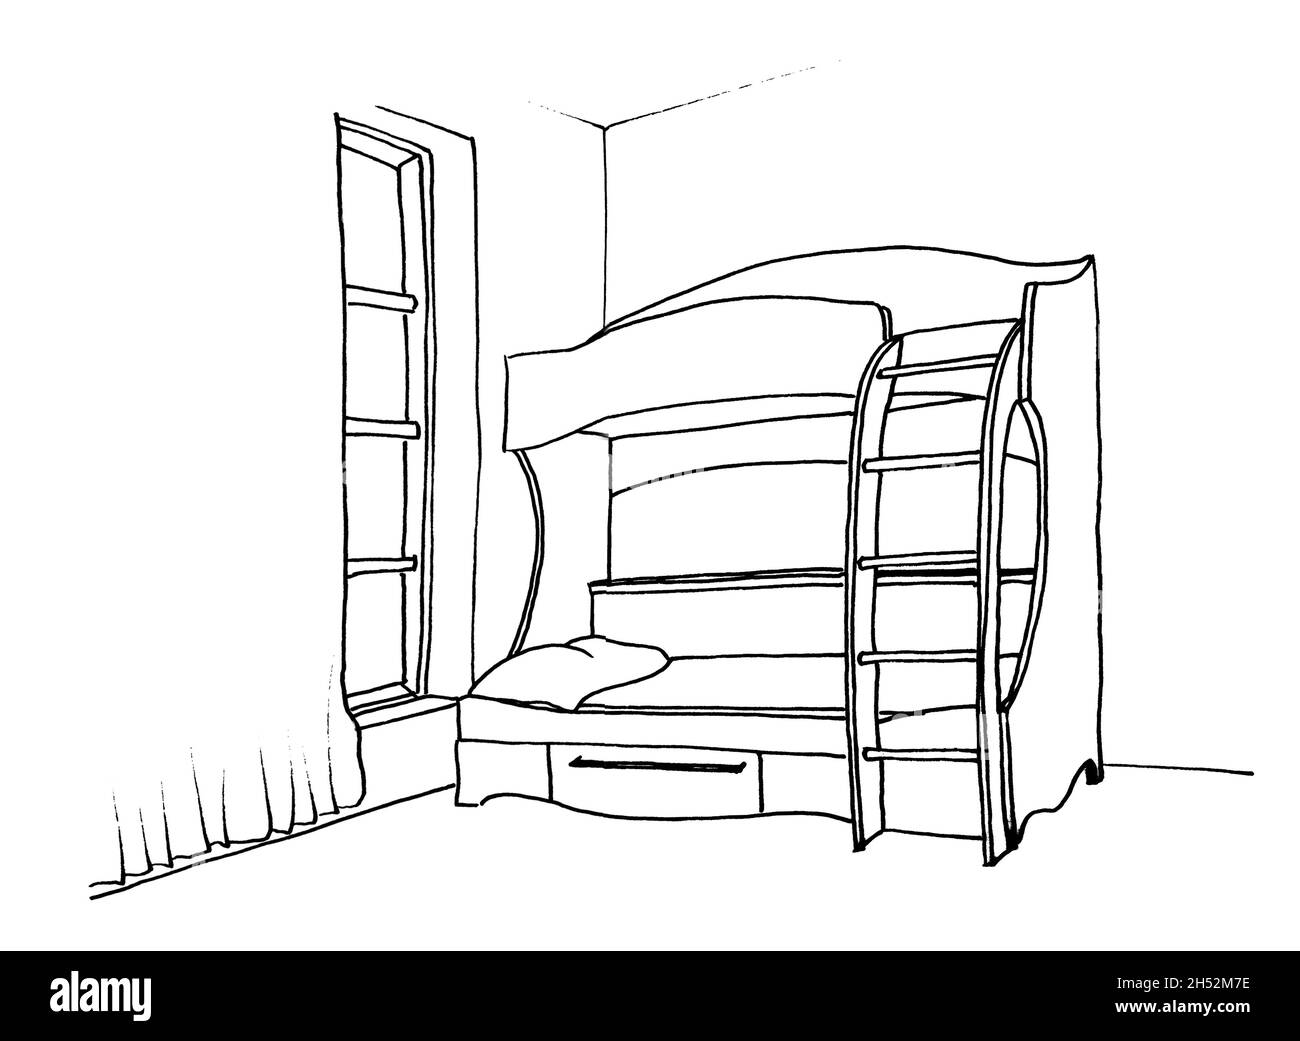 Disegno grafico di una camera interna per bambini letto a castello con scale Foto Stock